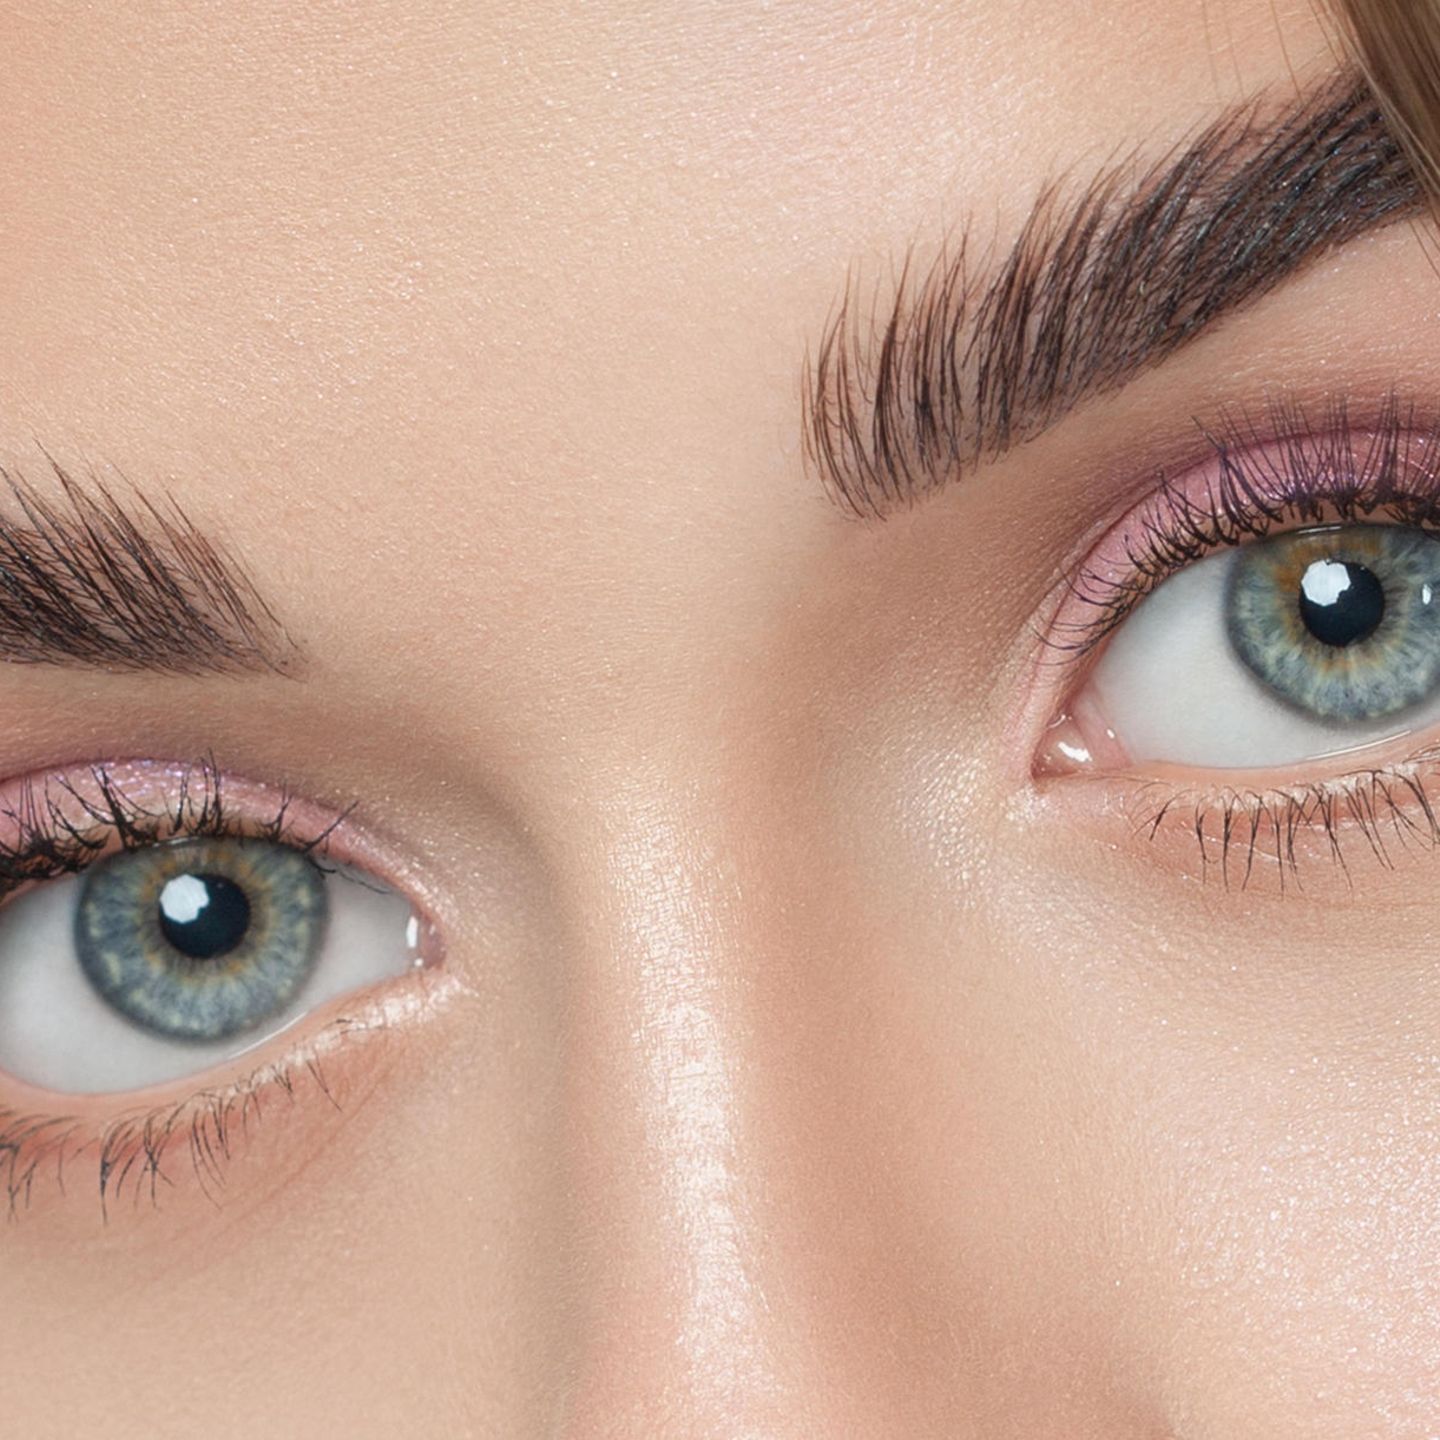 Echthaar statt Stift: Augenbrauen-Perücken bald Beauty-Trend? 